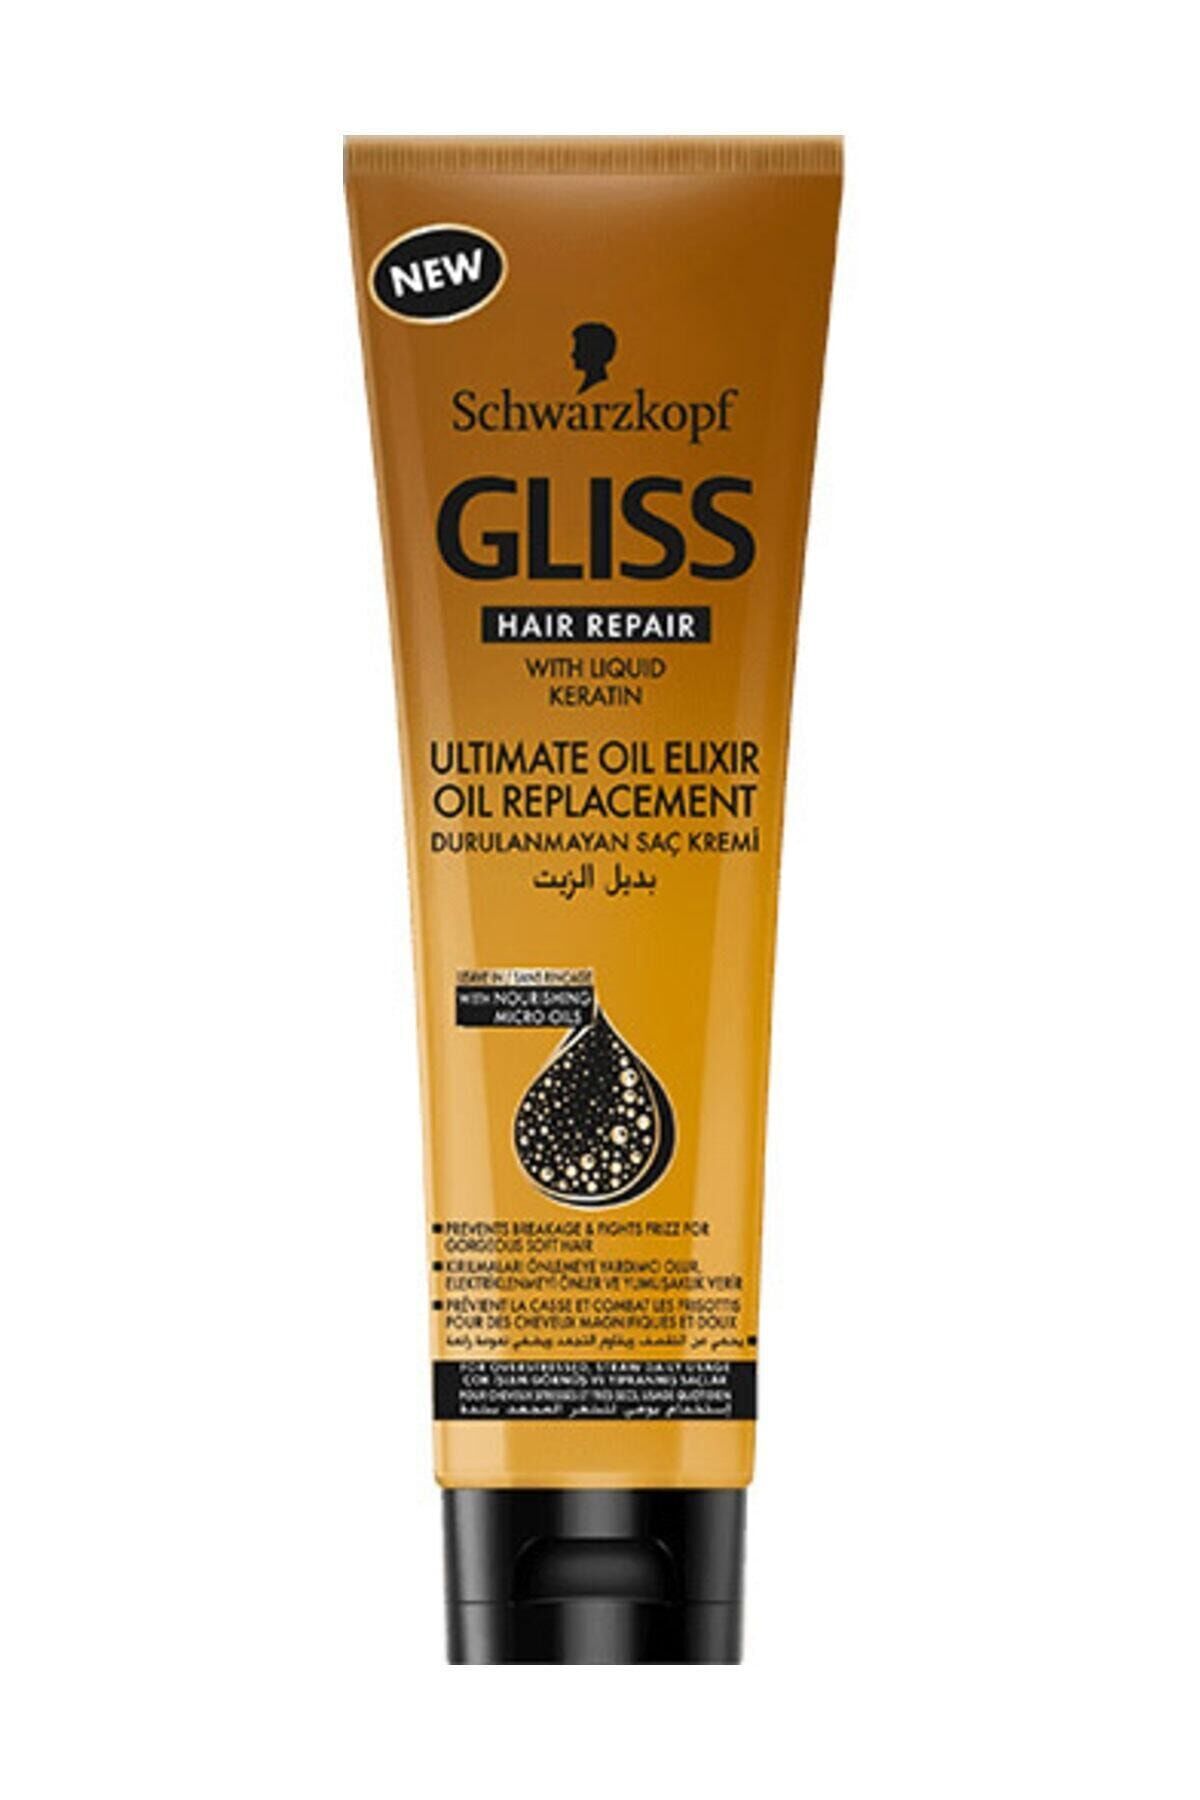 Gliss Durulanmayan Saç Kremi 250 ml ULTIMATE OIL ELIXIR